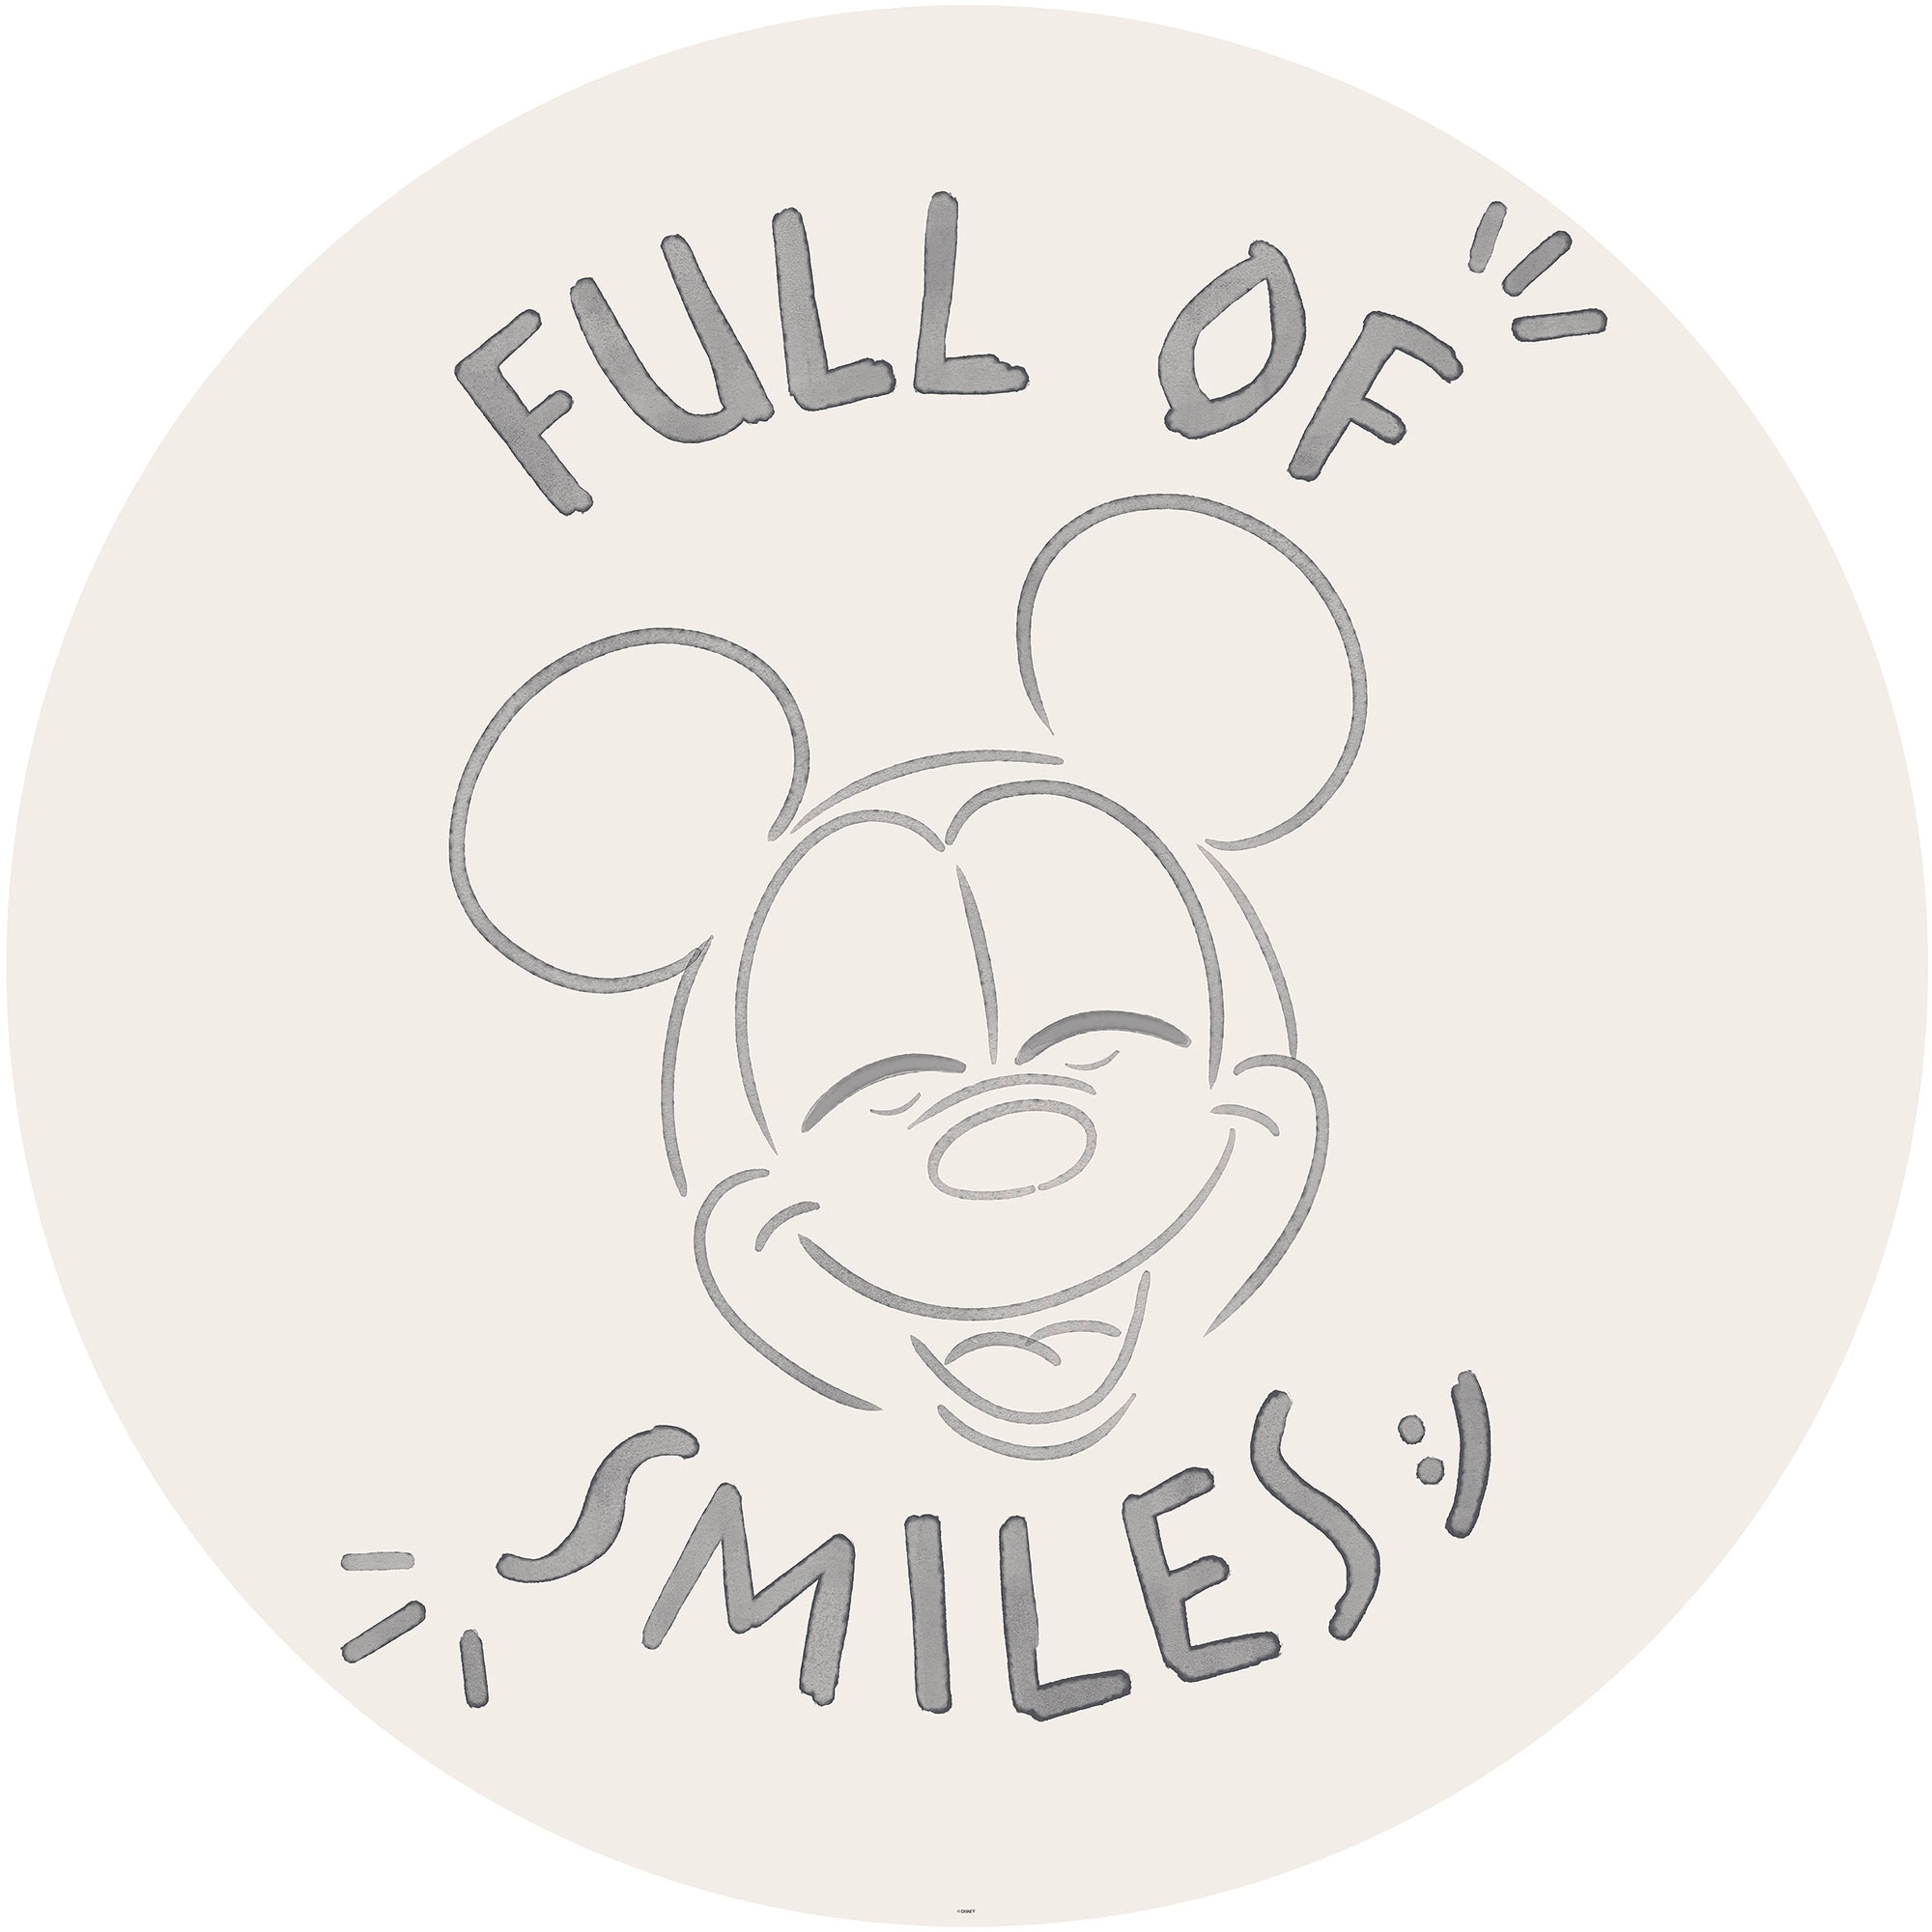 Fototapete »Mickey Mouse Joke«, 125x125 cm (Breite x Höhe), rund und selbstklebend